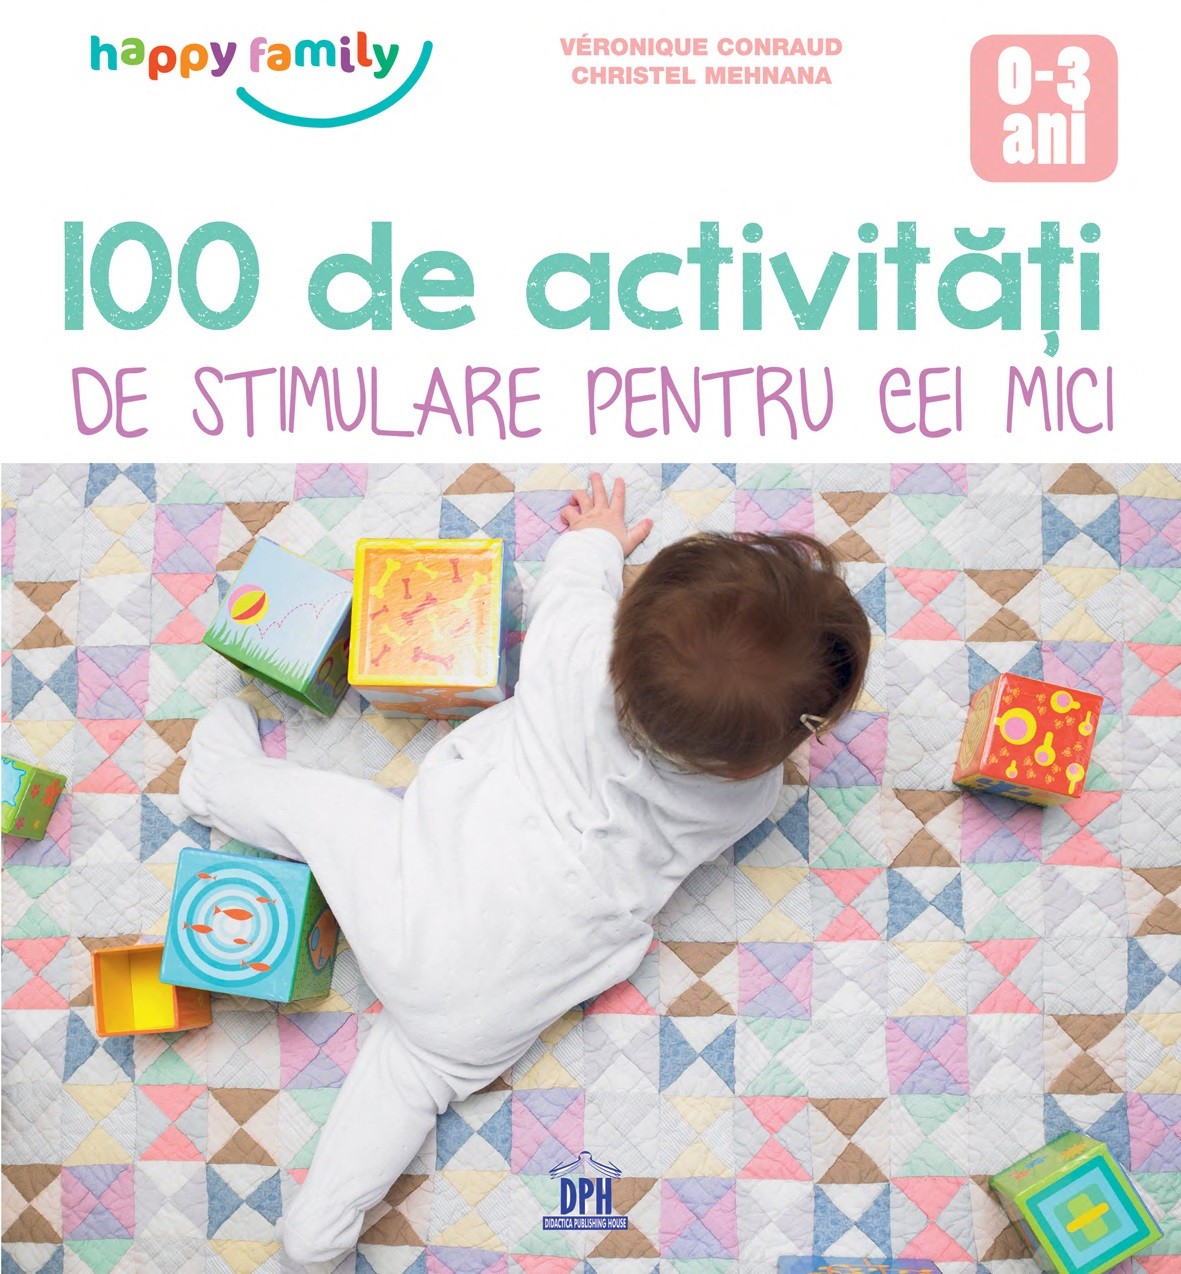 100 de activitati de stimulare pentru cei mici 0-3 ani - Veronique Conraud, Christel Mehnana